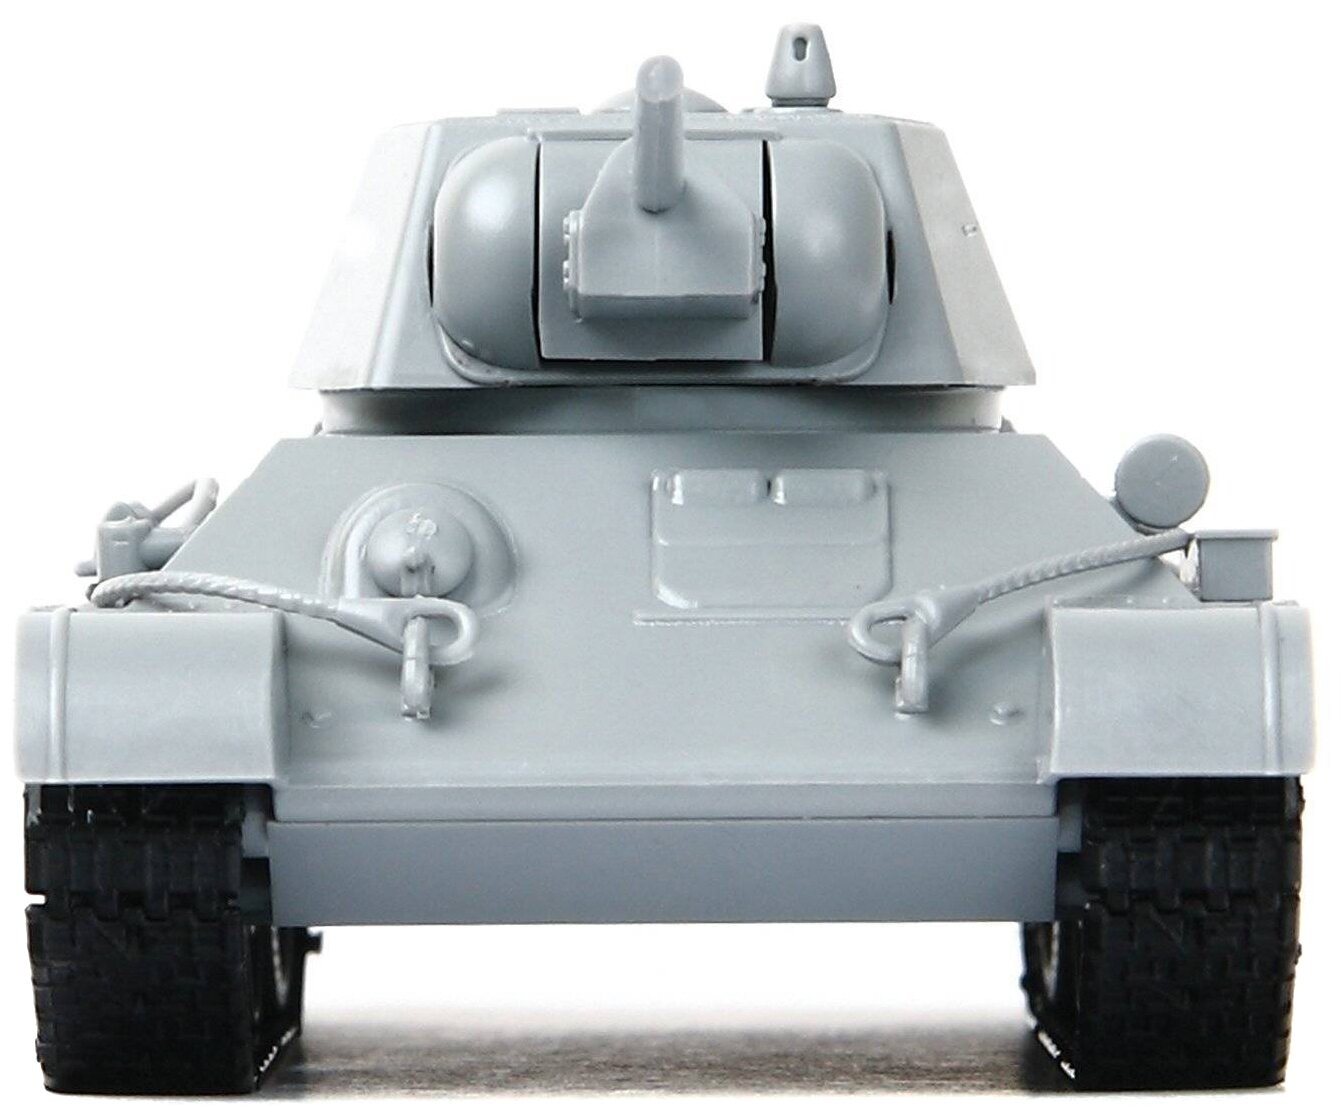 Сборная модель ZVEZDA Советский средний танк Т-34/76 (мод. 1943 г.) (5001)